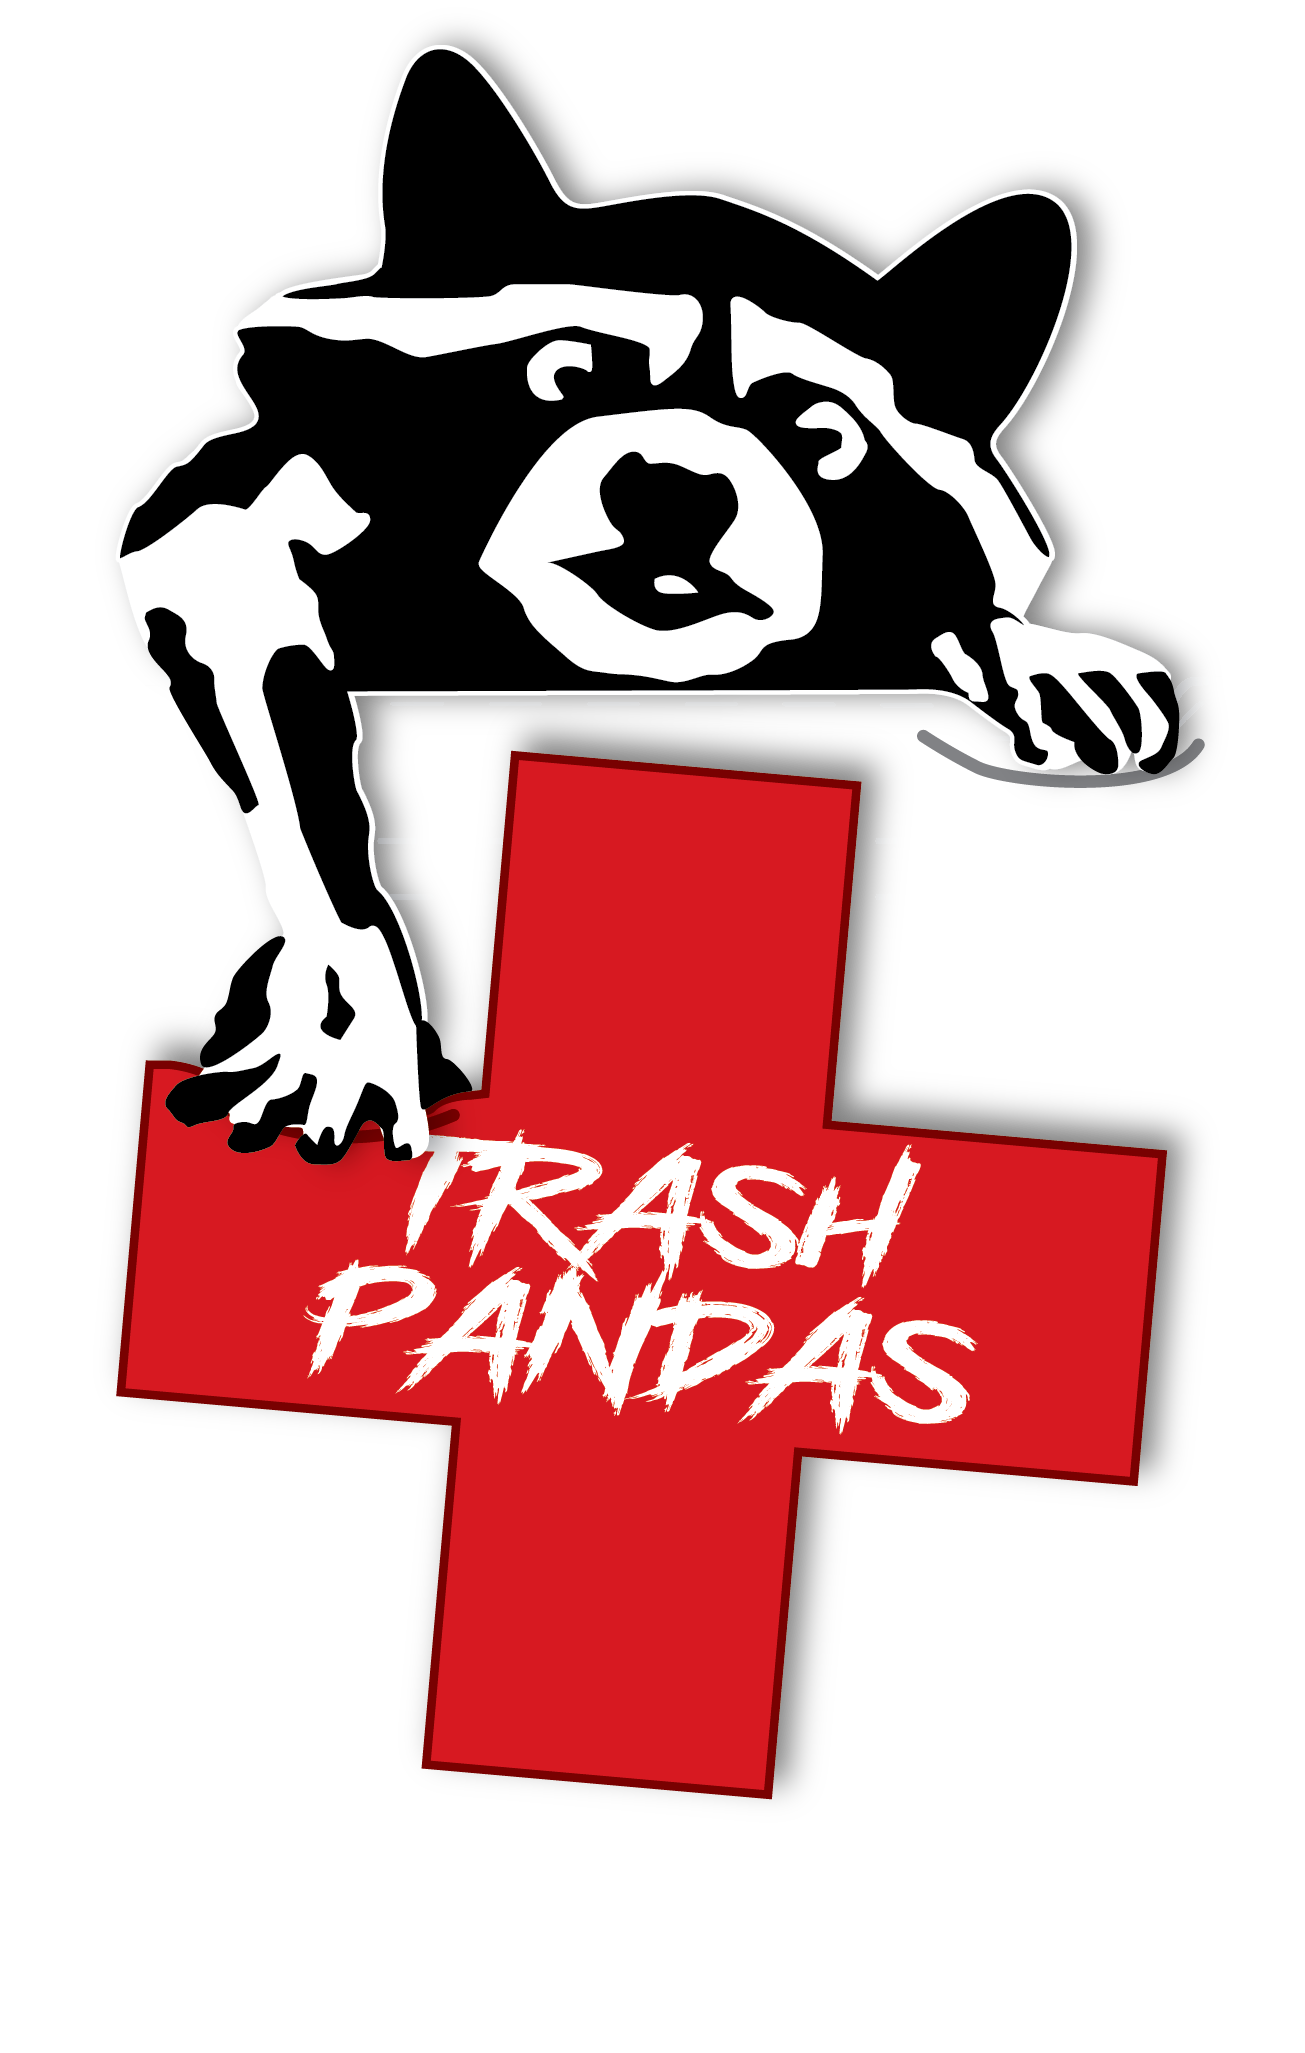 C Co, 2-1 GSAB "Trash Pandas"